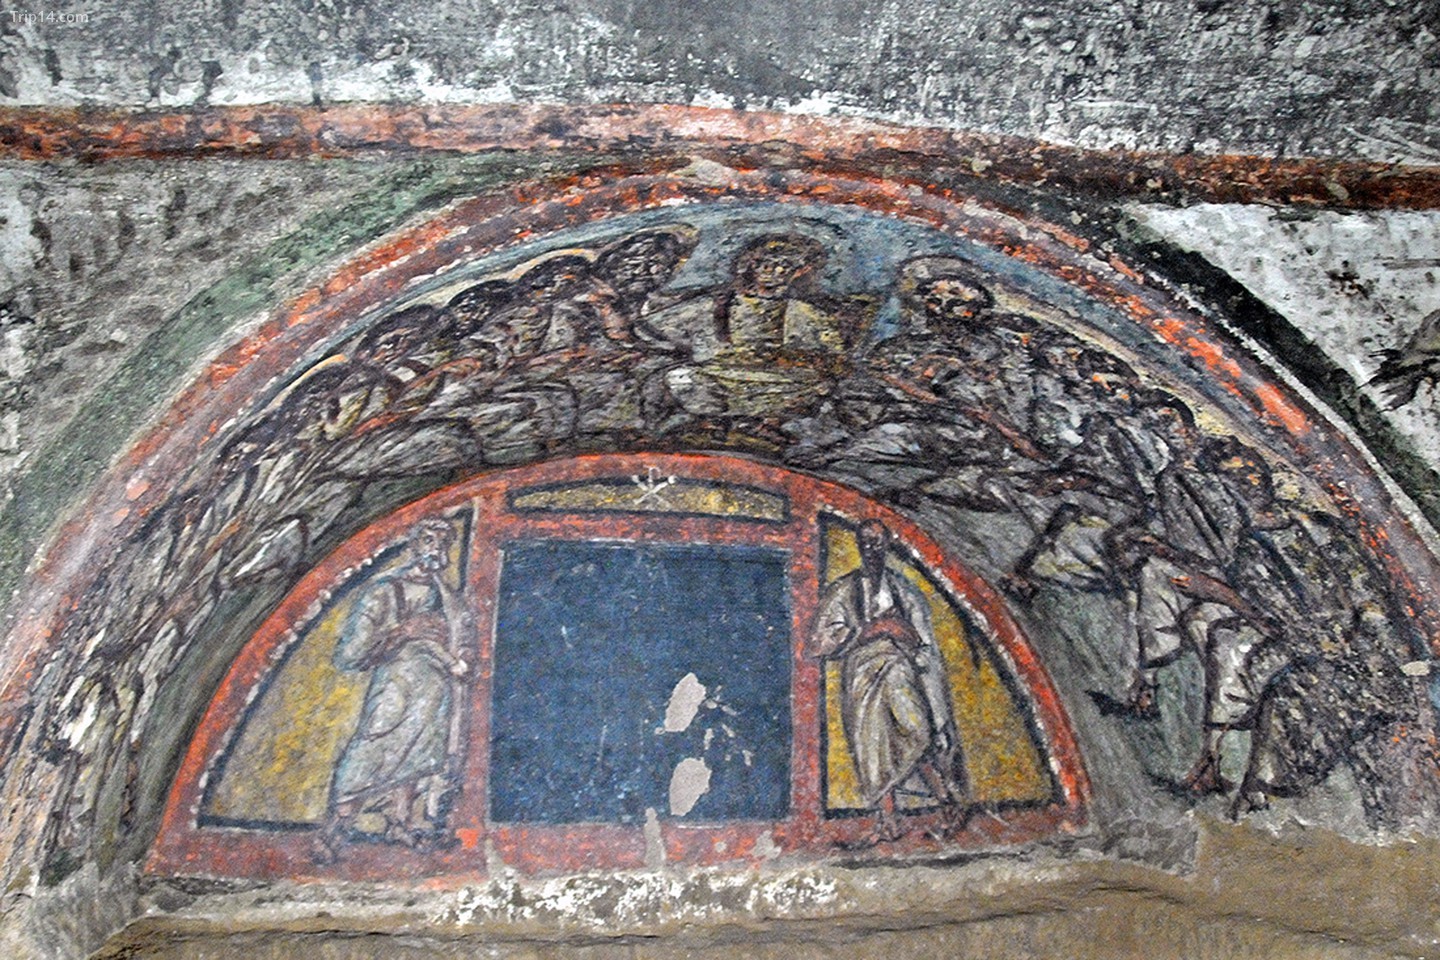  Hầm mộ Thánh Domitilla   |   